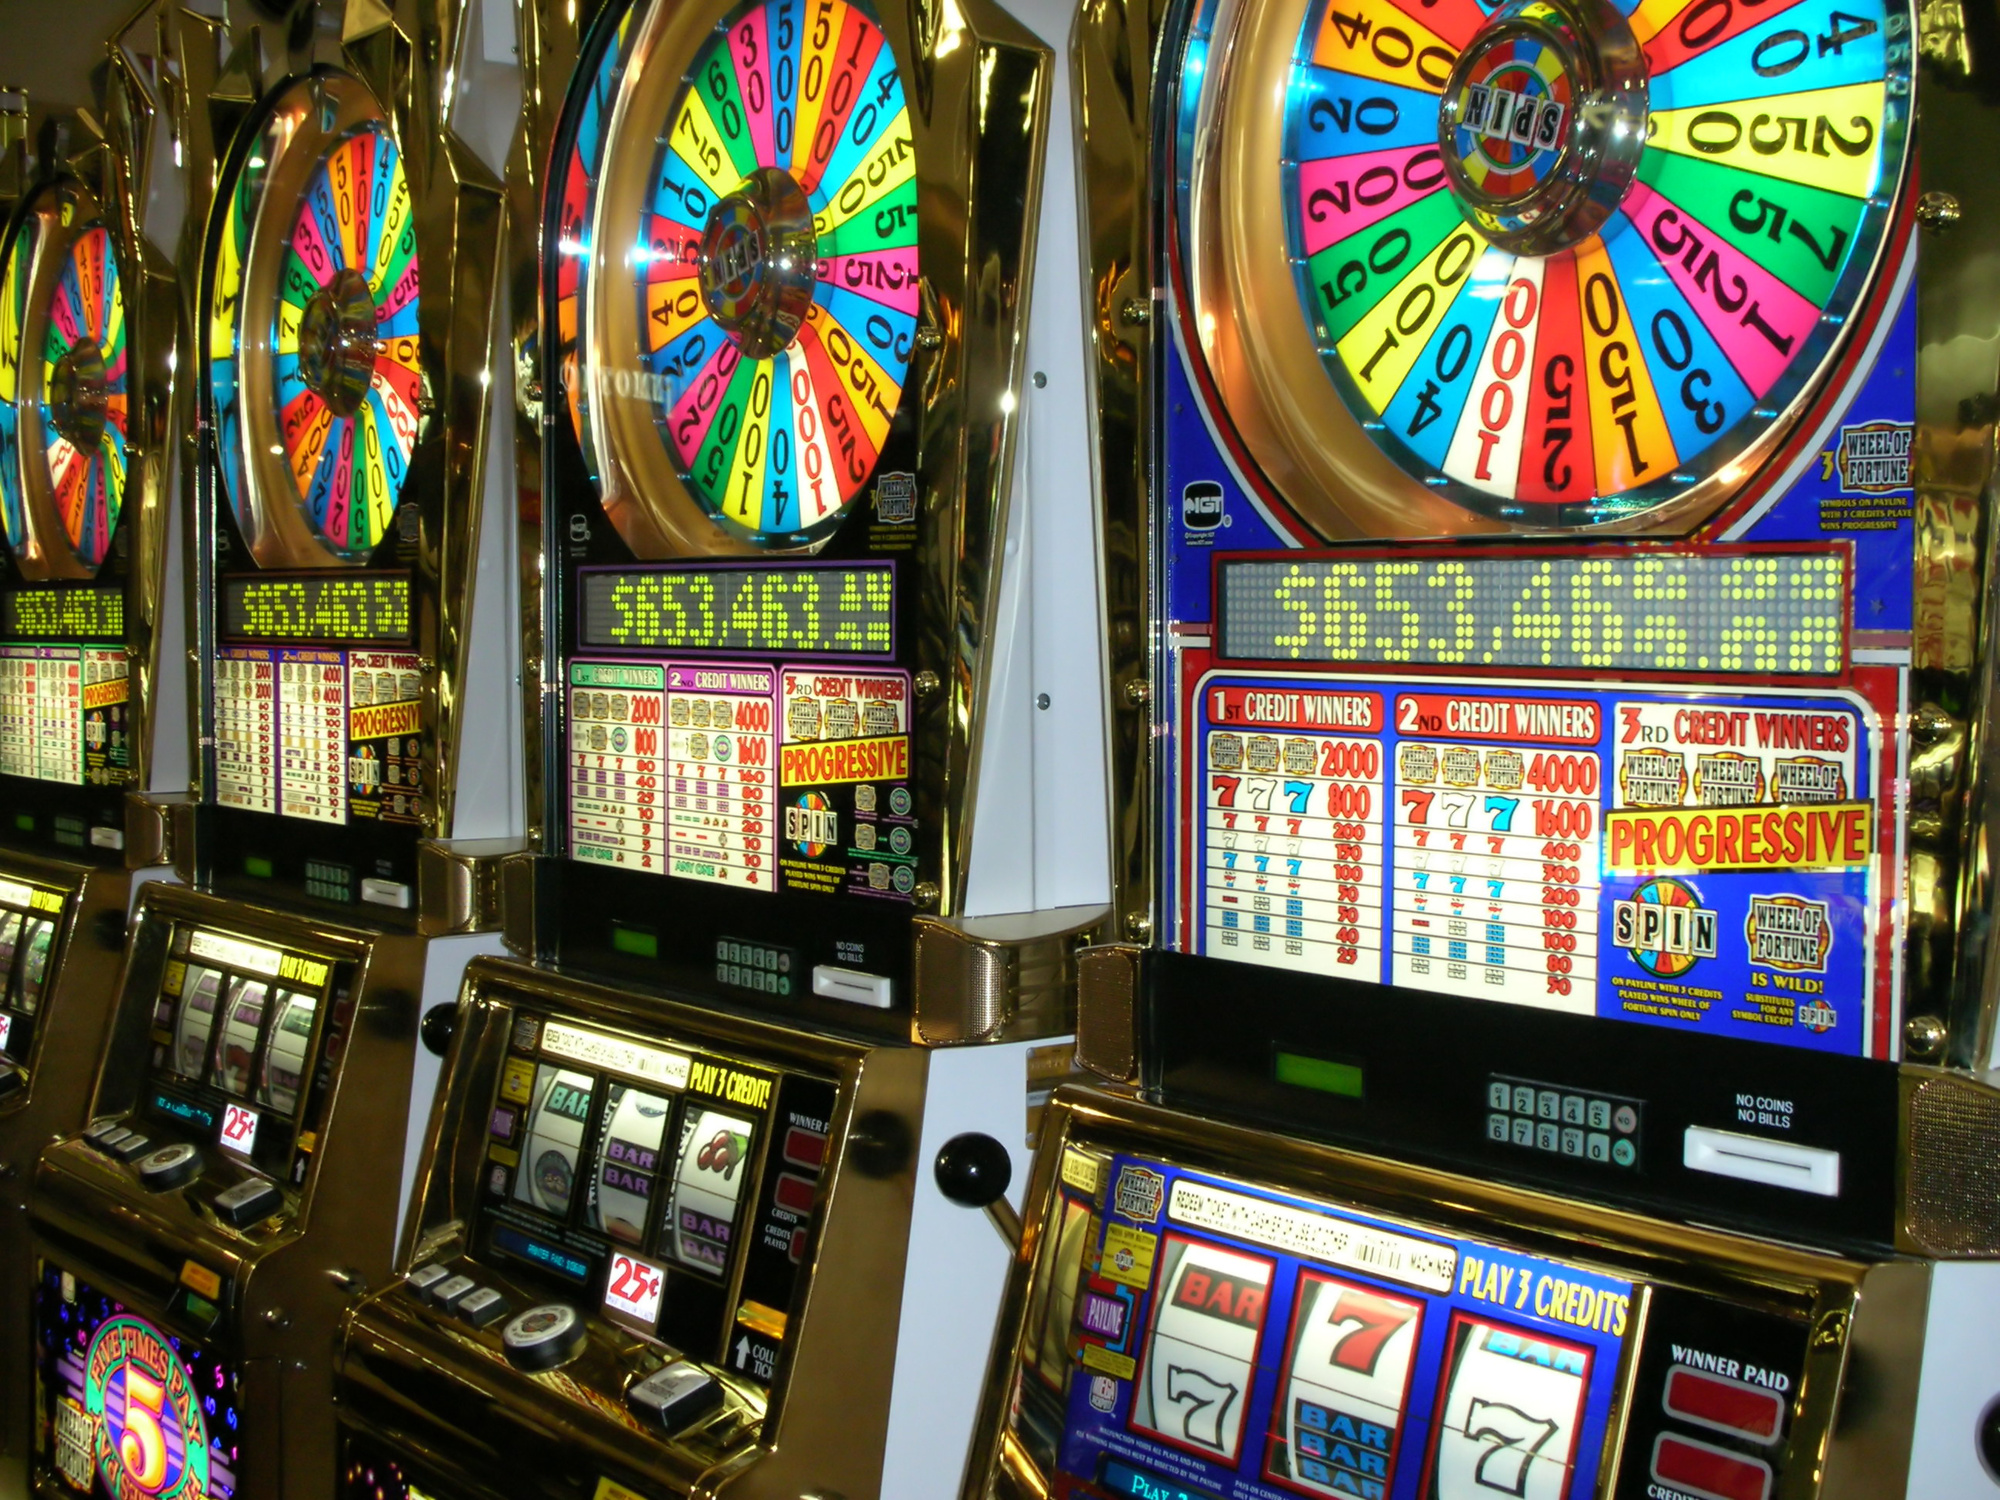 Do casinos rig slot machines